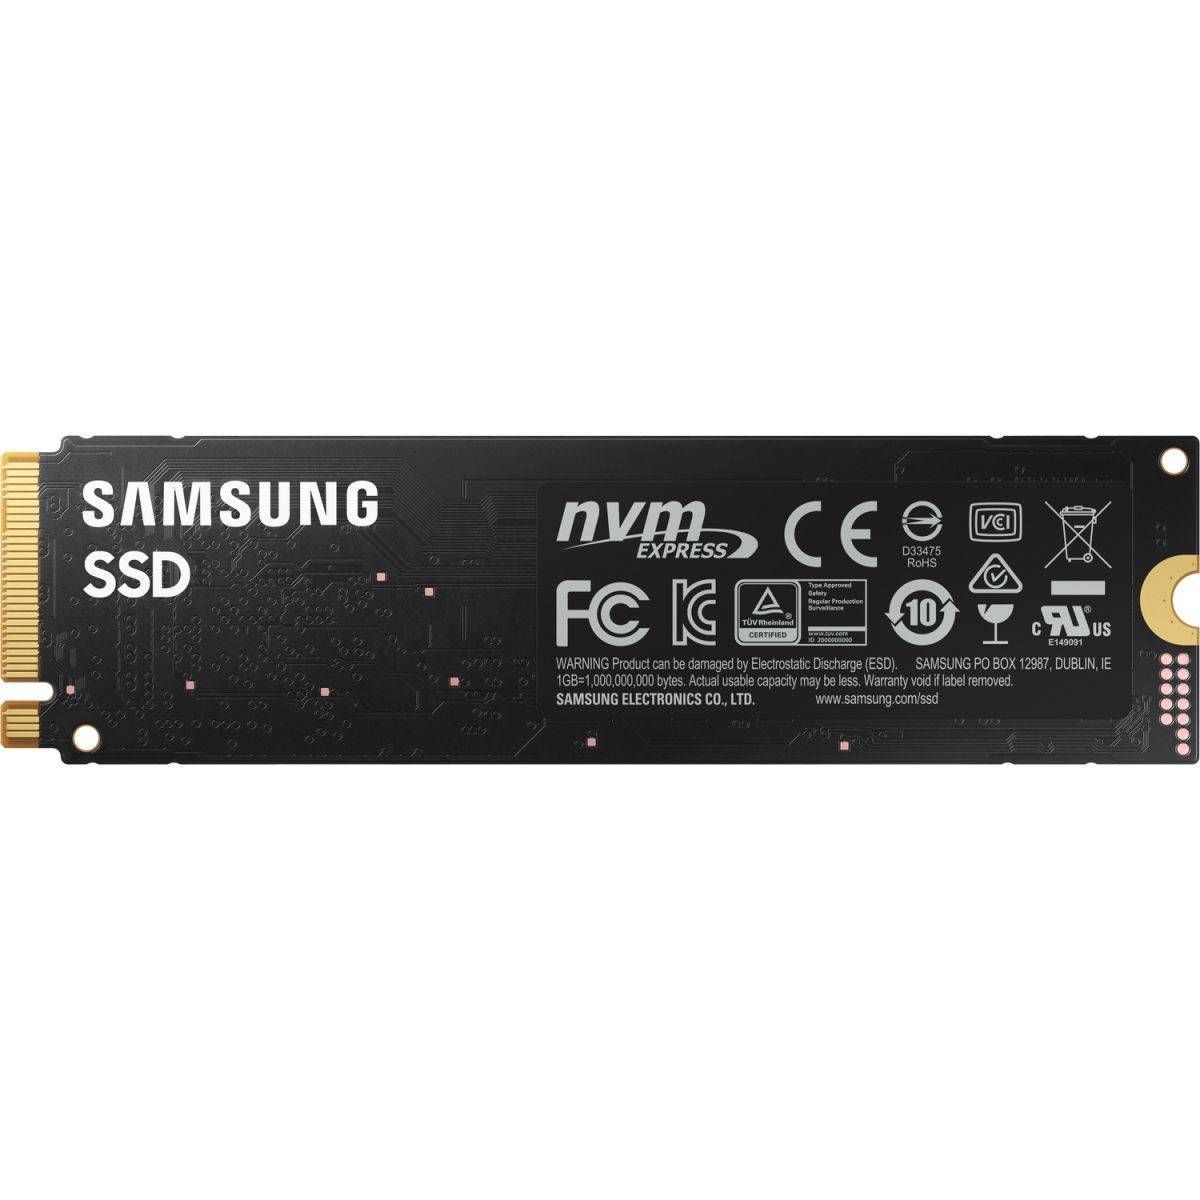 Твердотельные накопители/ Samsung SSD 980, 500GB, M.2(22x80mm), NVMe 1.4, PCIe 3.0 x4, 3-bit MLC, R/W 3100/2600MB/s, IOPs 400 000/470 000, TBW 300, DWPD 0.33 (12 мес.)